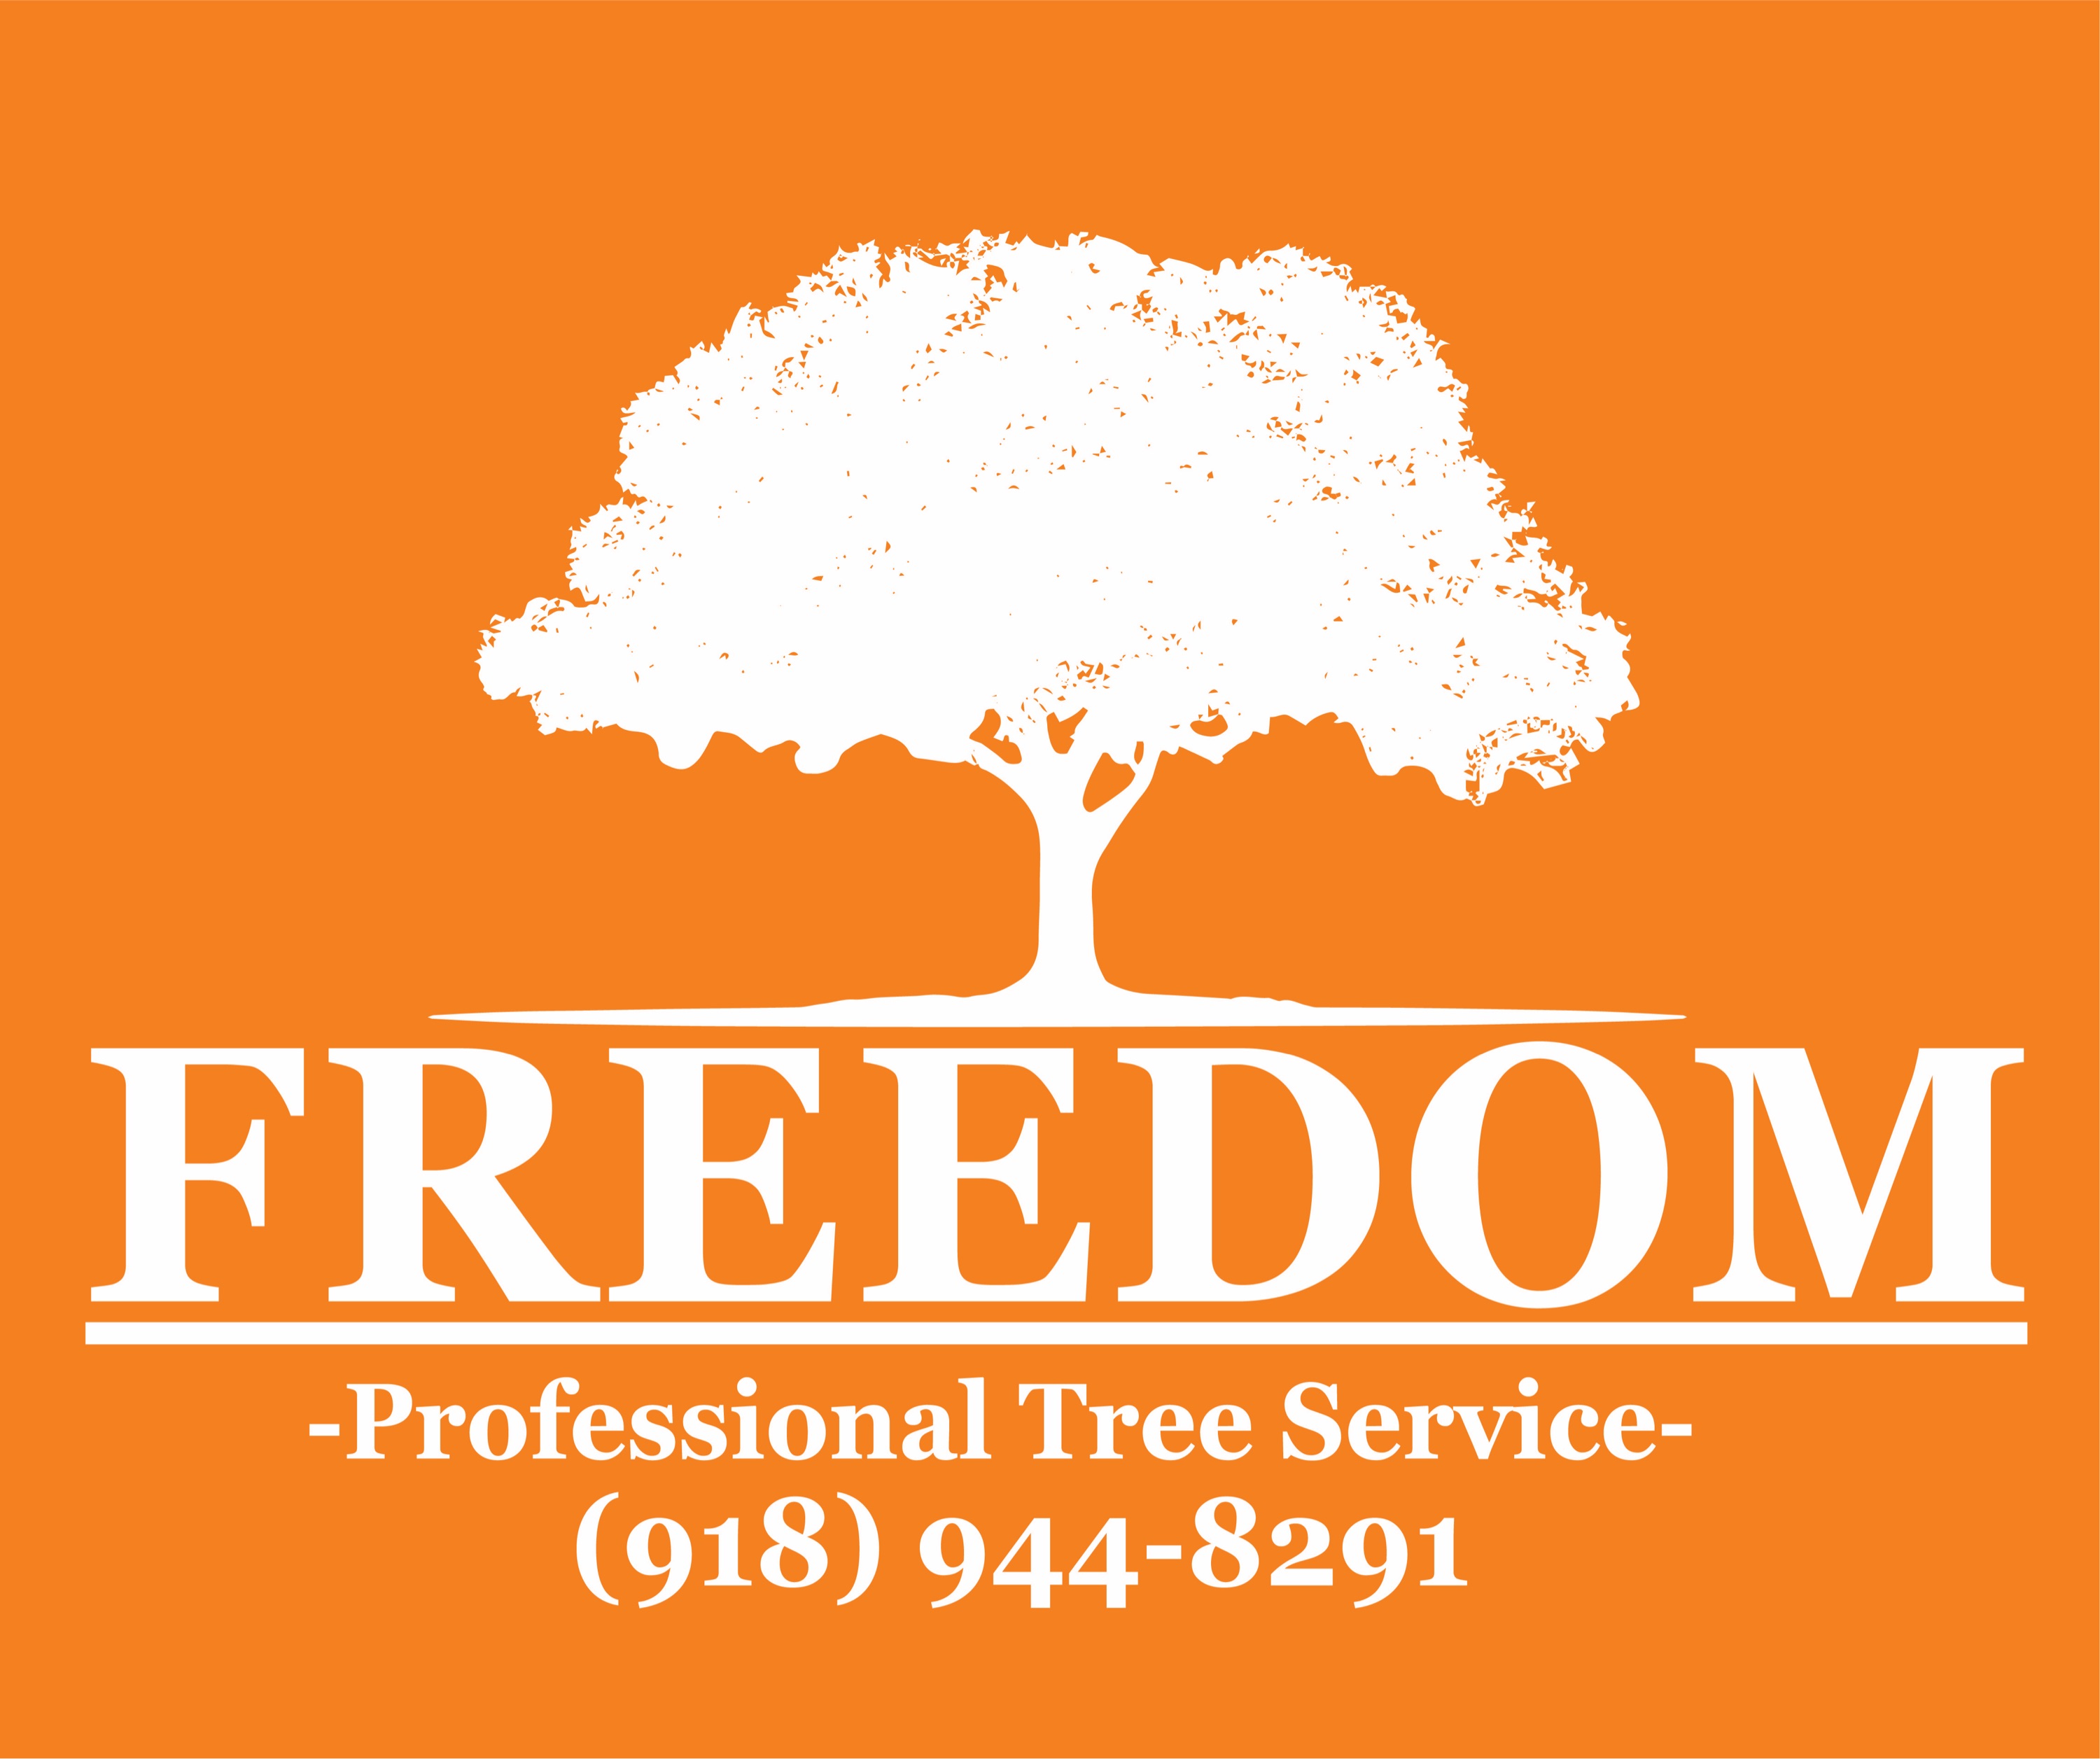 Freedom Tree Service Logo